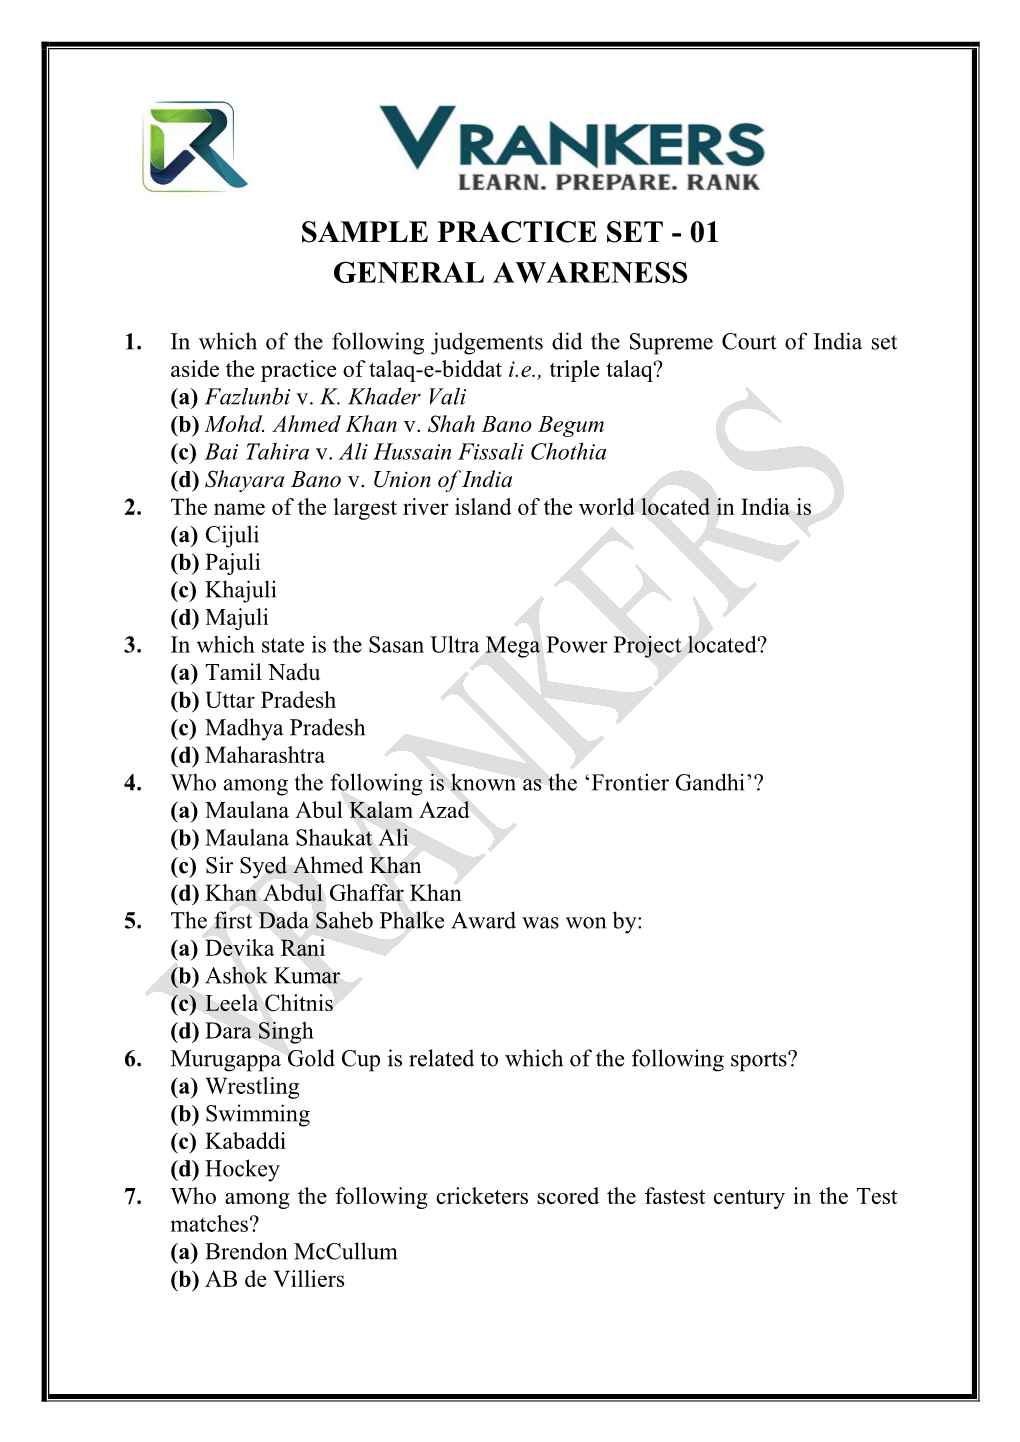 Sample Practice Set - 01 General Awareness